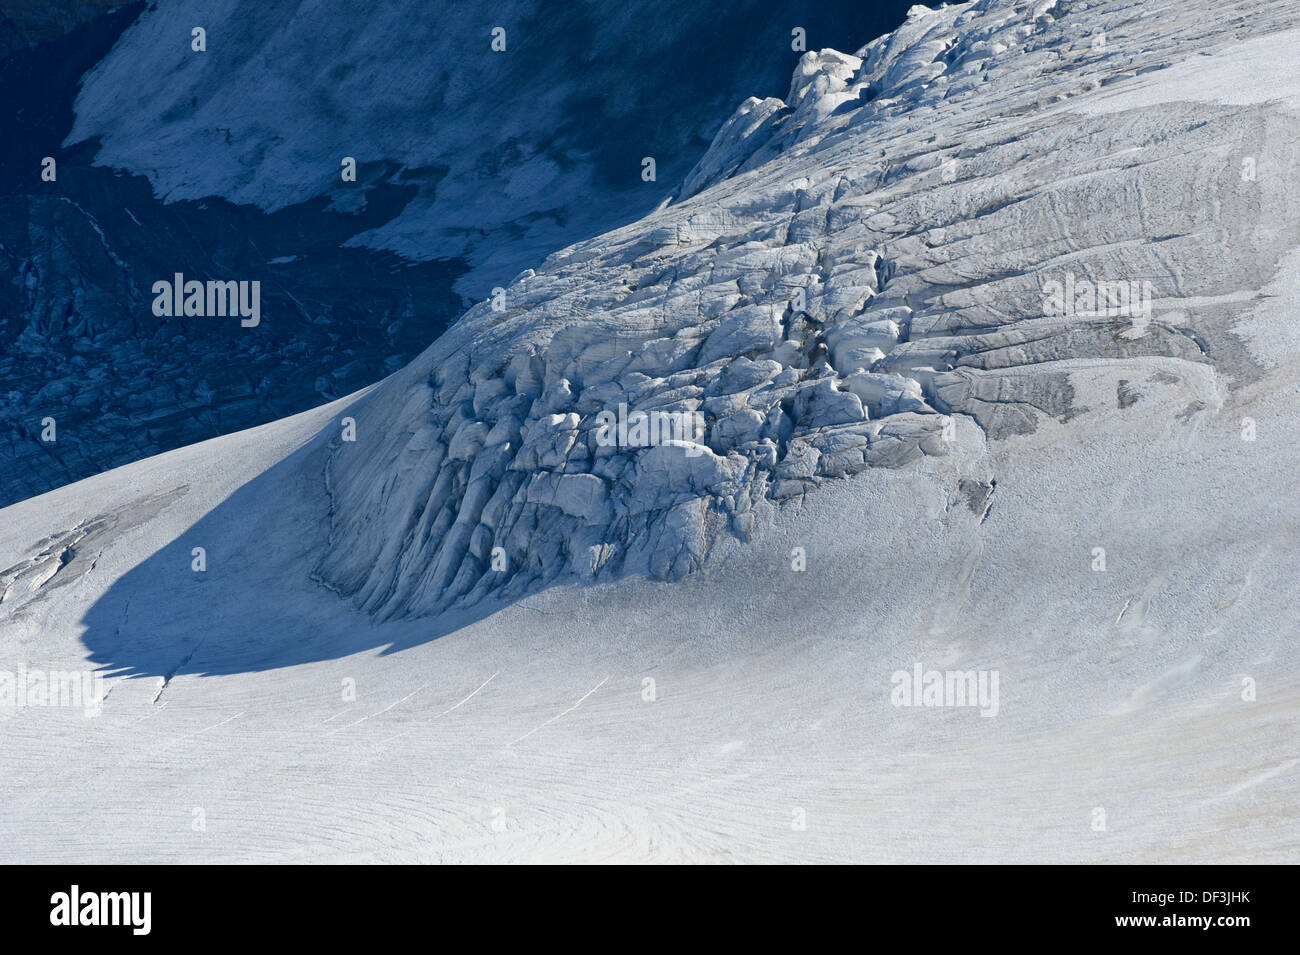 Nationalpark hohe Tauern: Der Pasterze-Gletscher am Großglockner wird zurückbehandelt. Der einst große Gletscher wird wahrscheinlich in wenigen Jahrzehnten verschwinden. Stockfoto